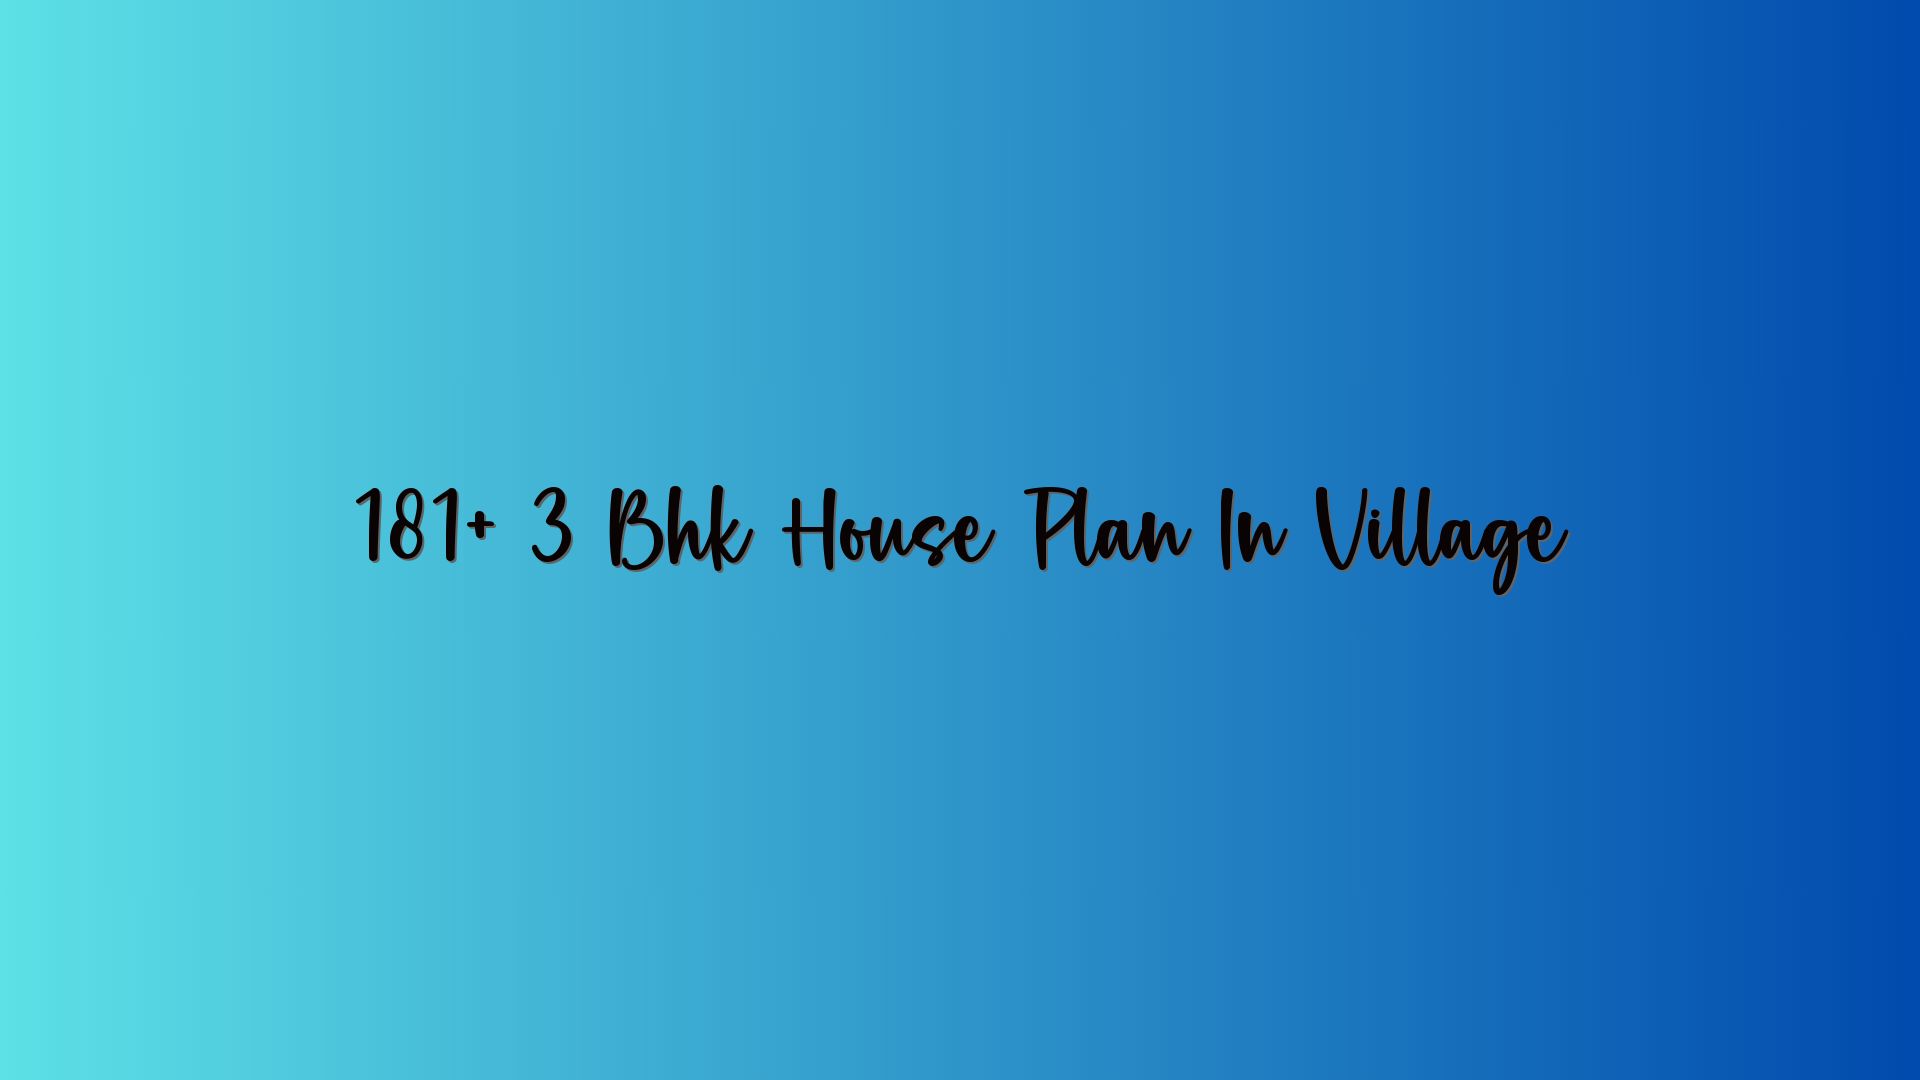 181+ 3 Bhk House Plan In Village